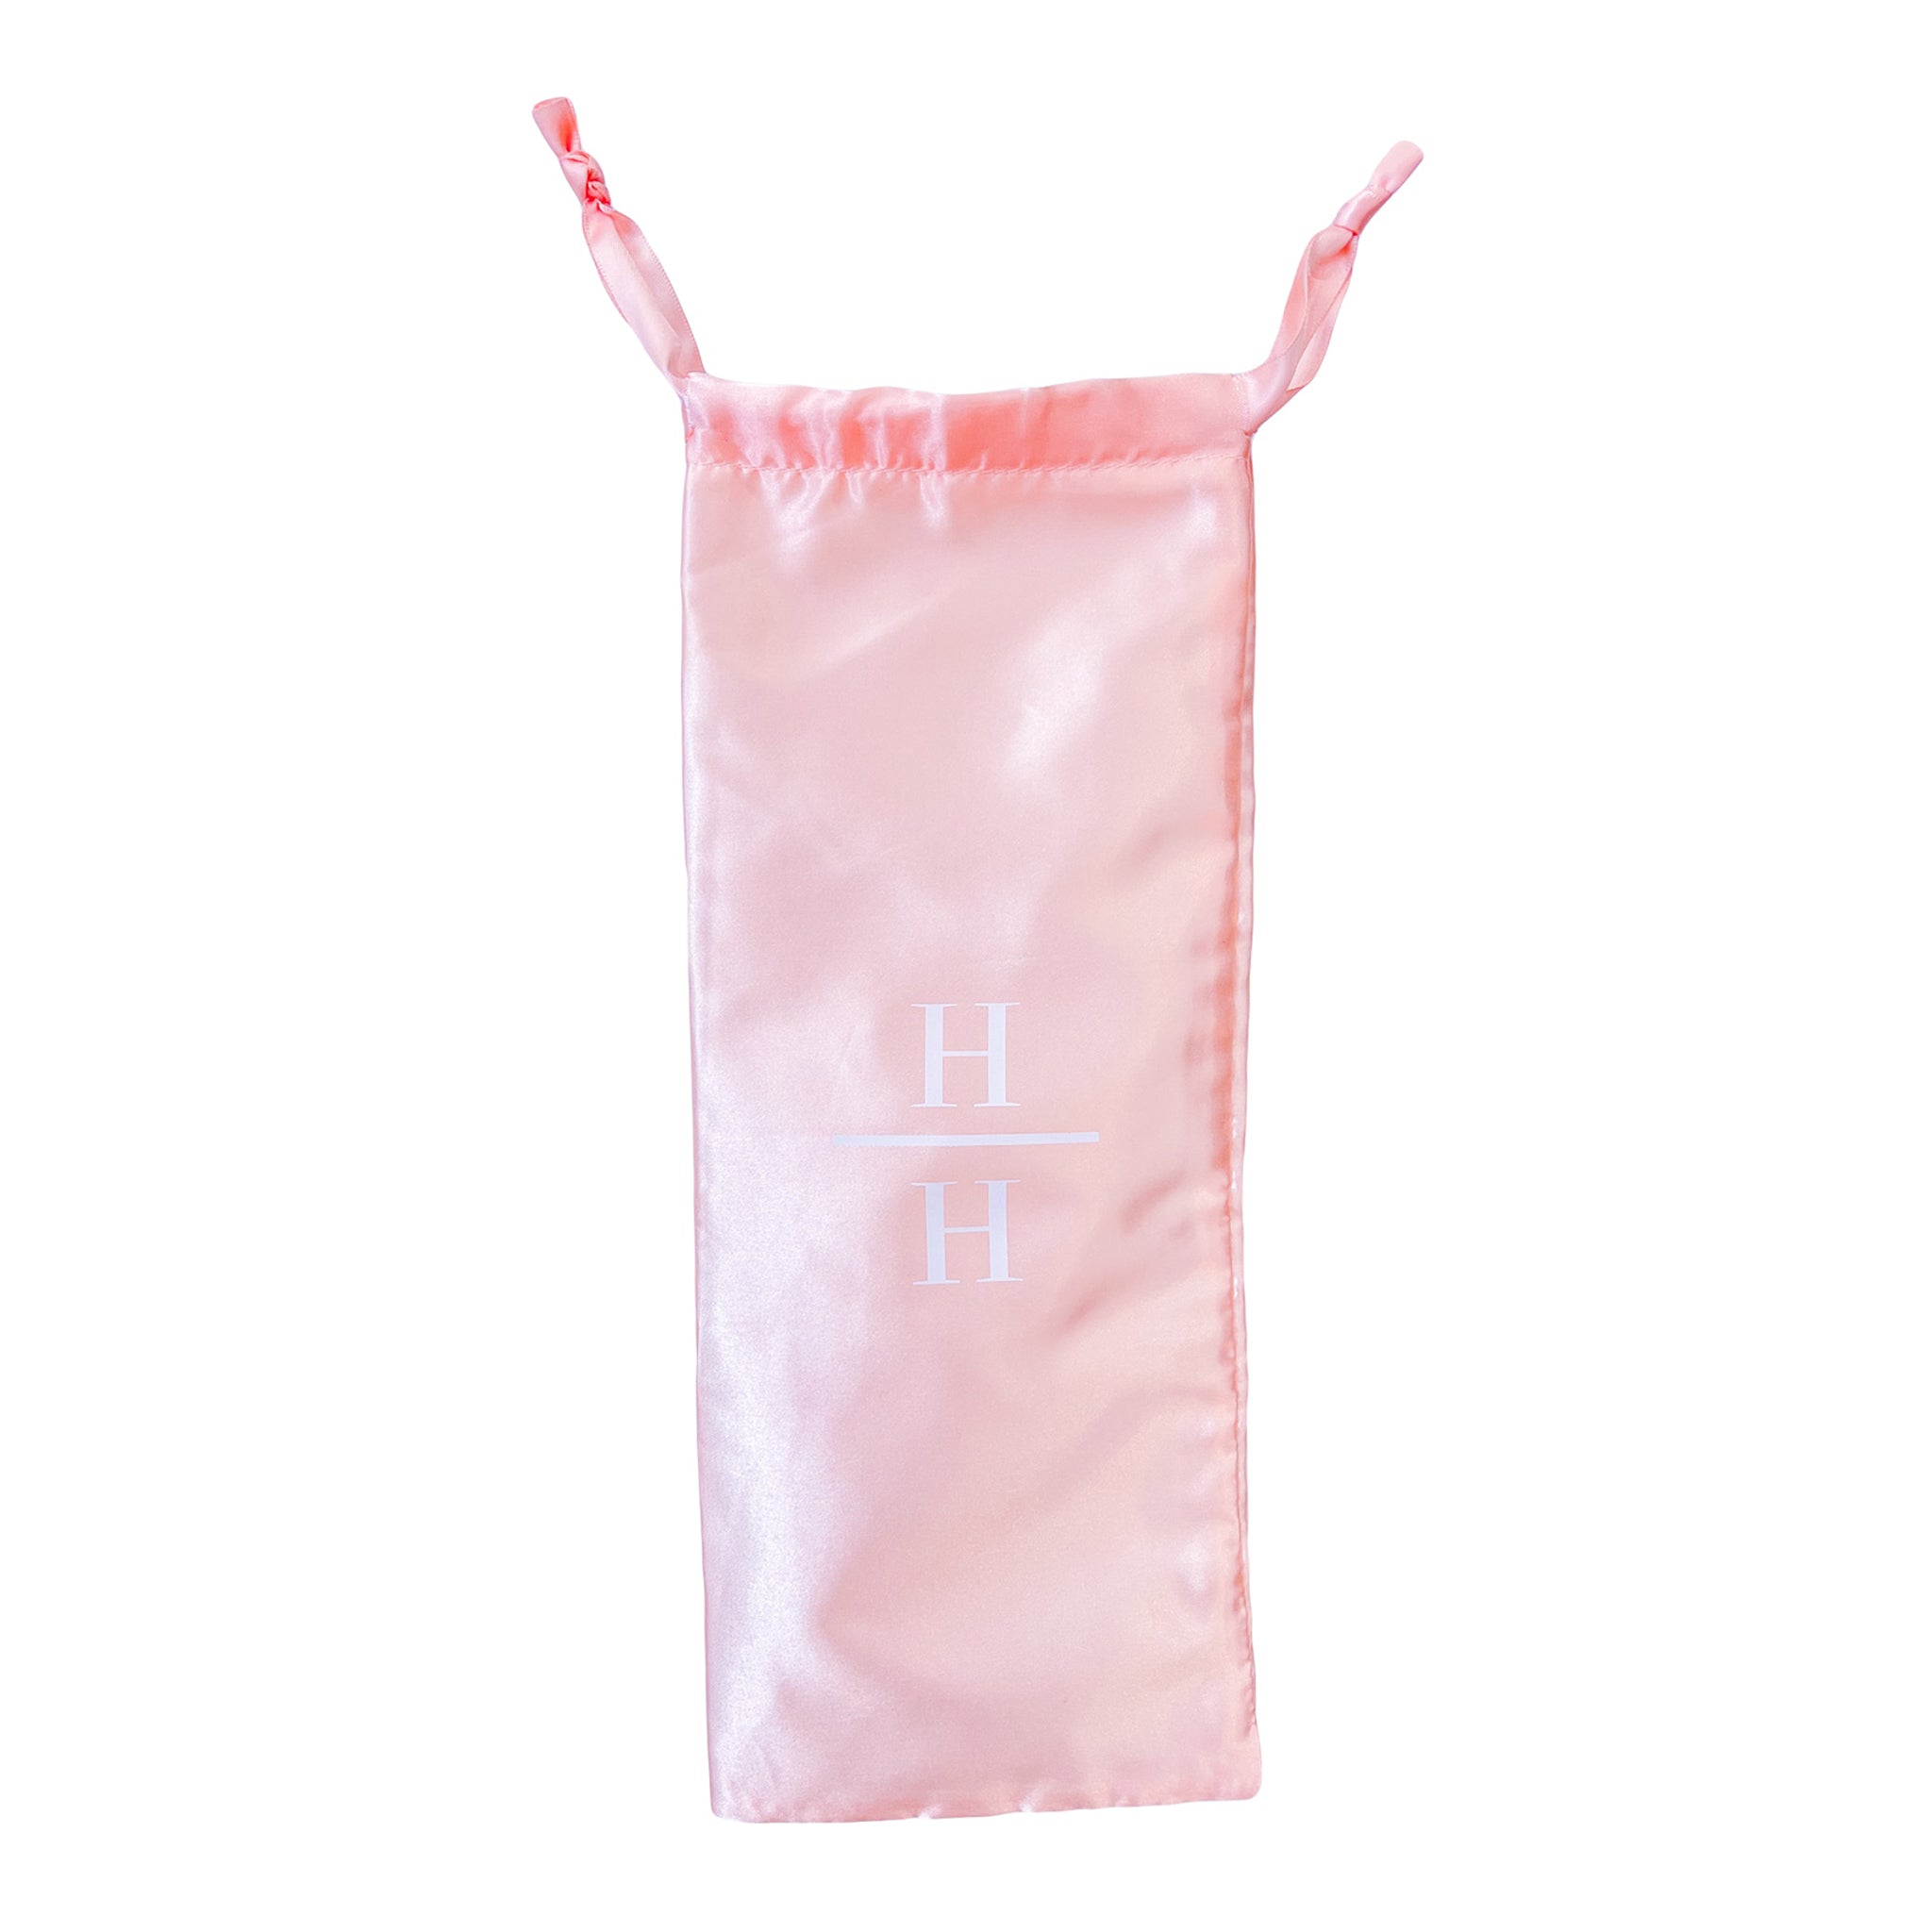 Satin Travel Bag in Pink